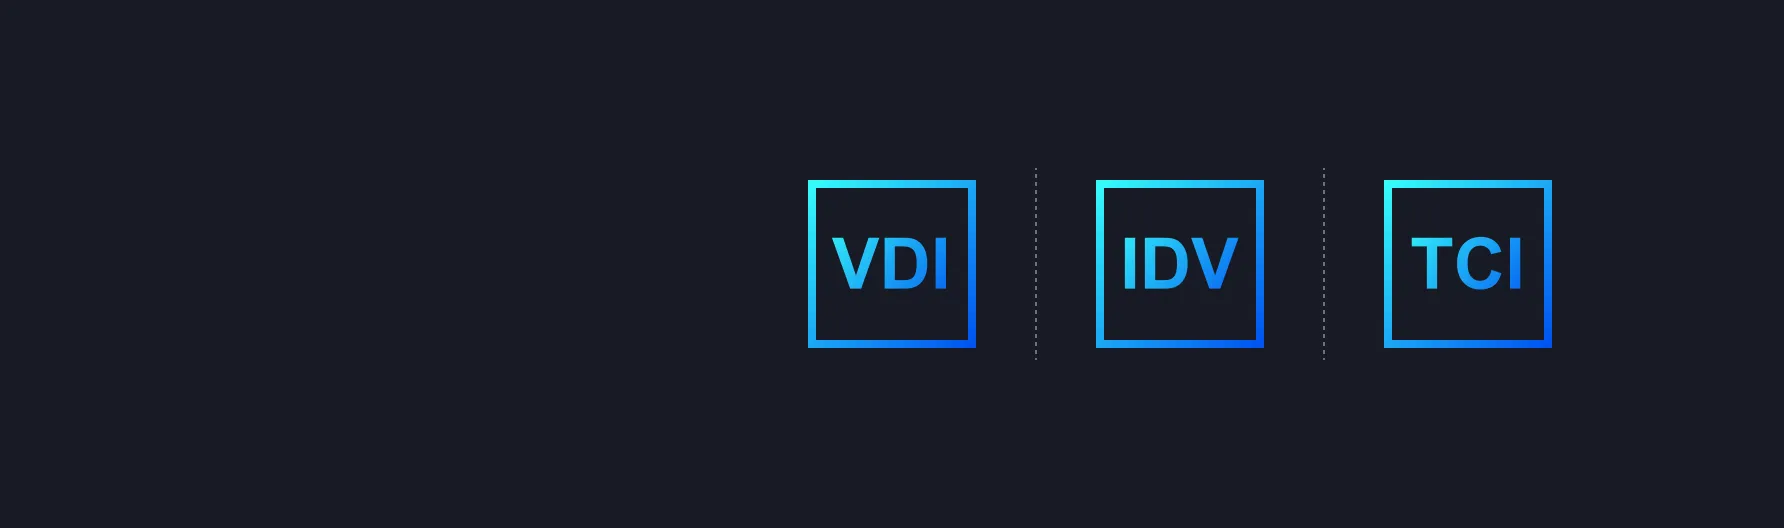 支持VDI/IDV/TCI融合管理